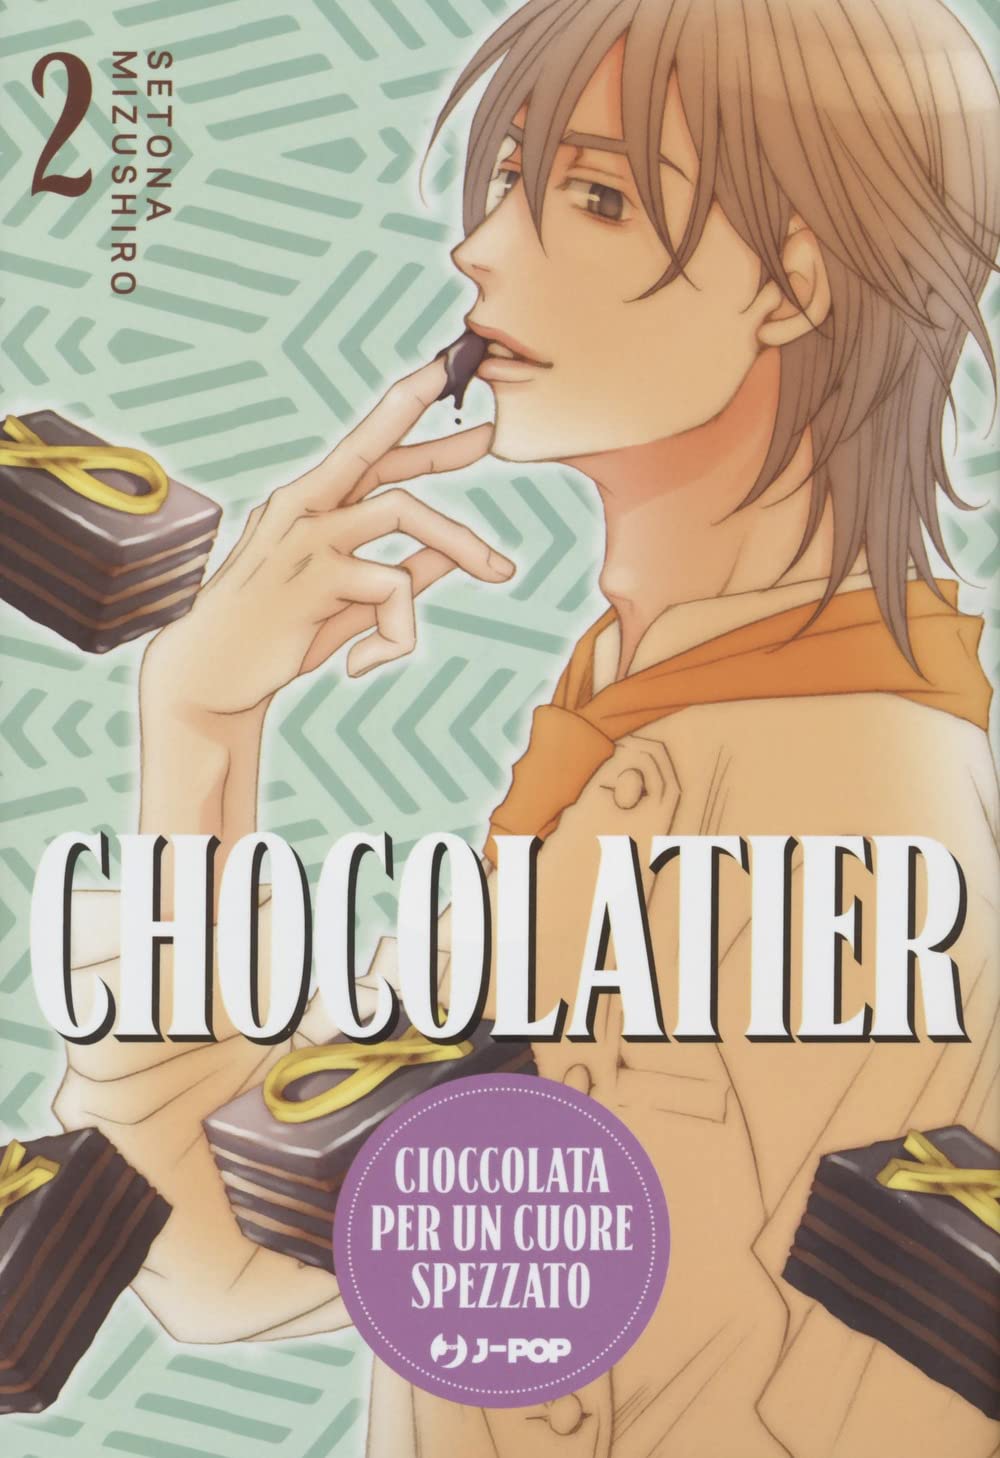 JPOP CHOCOLATIER #002